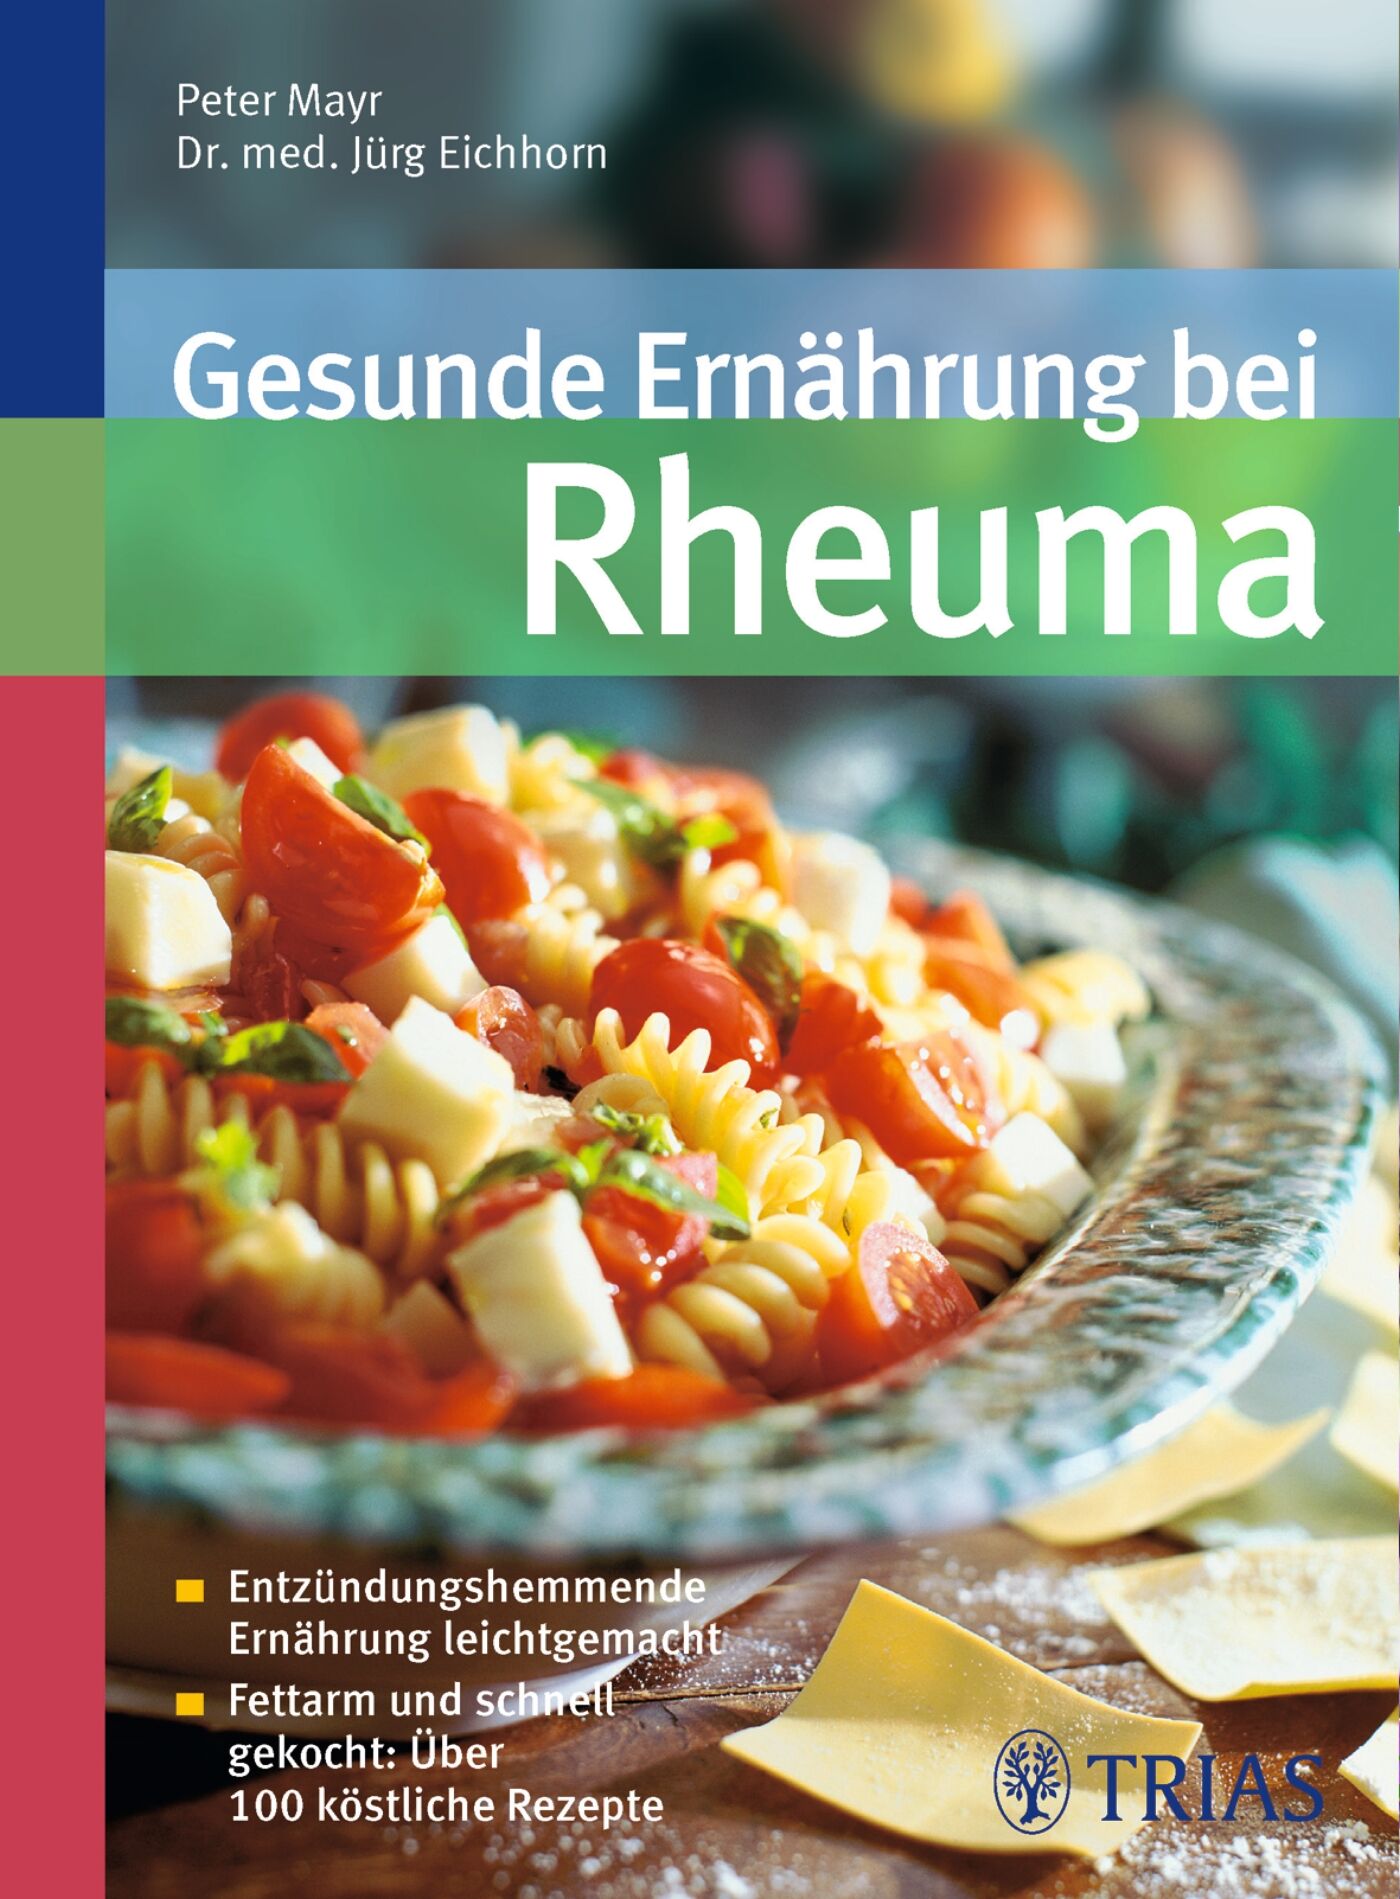 Gesunde Ernährung bei Rheuma, 9783830464259